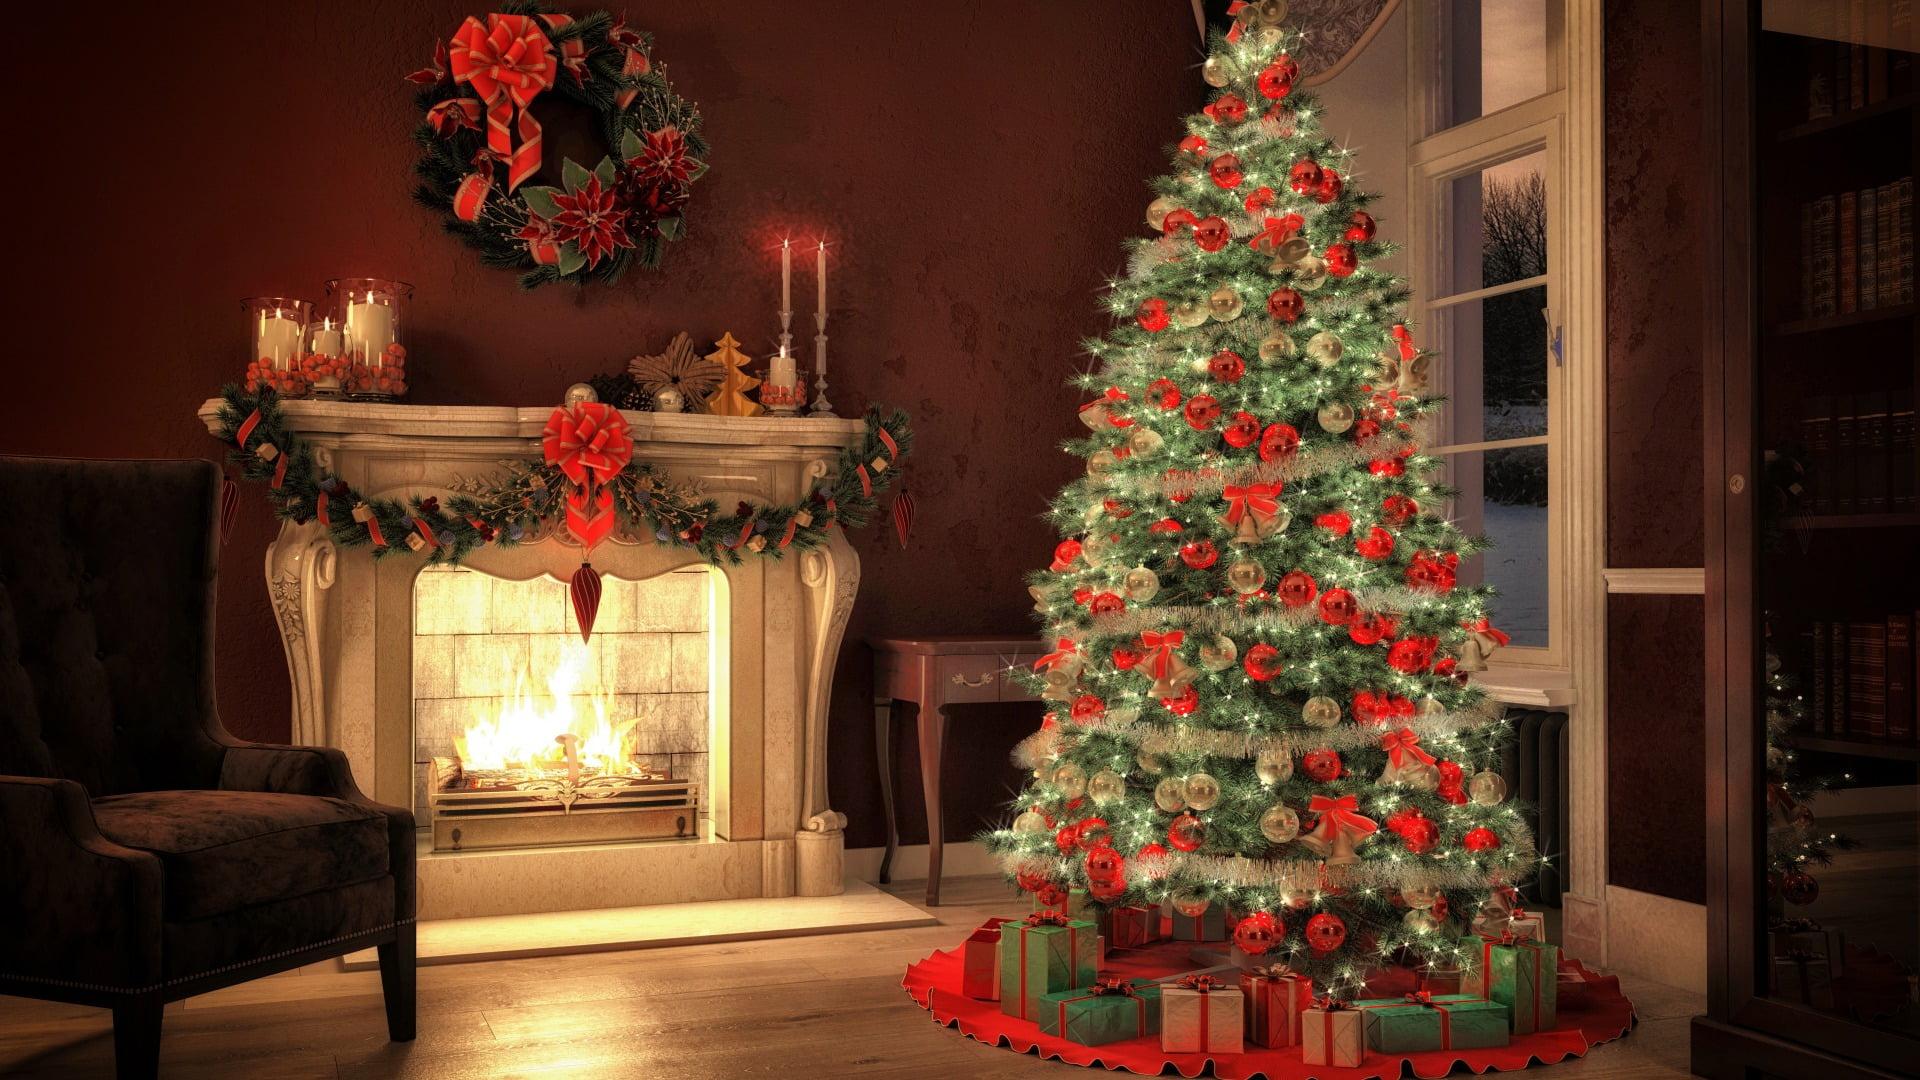 Green Christmas tree and Christmas ornament lot, Christmas